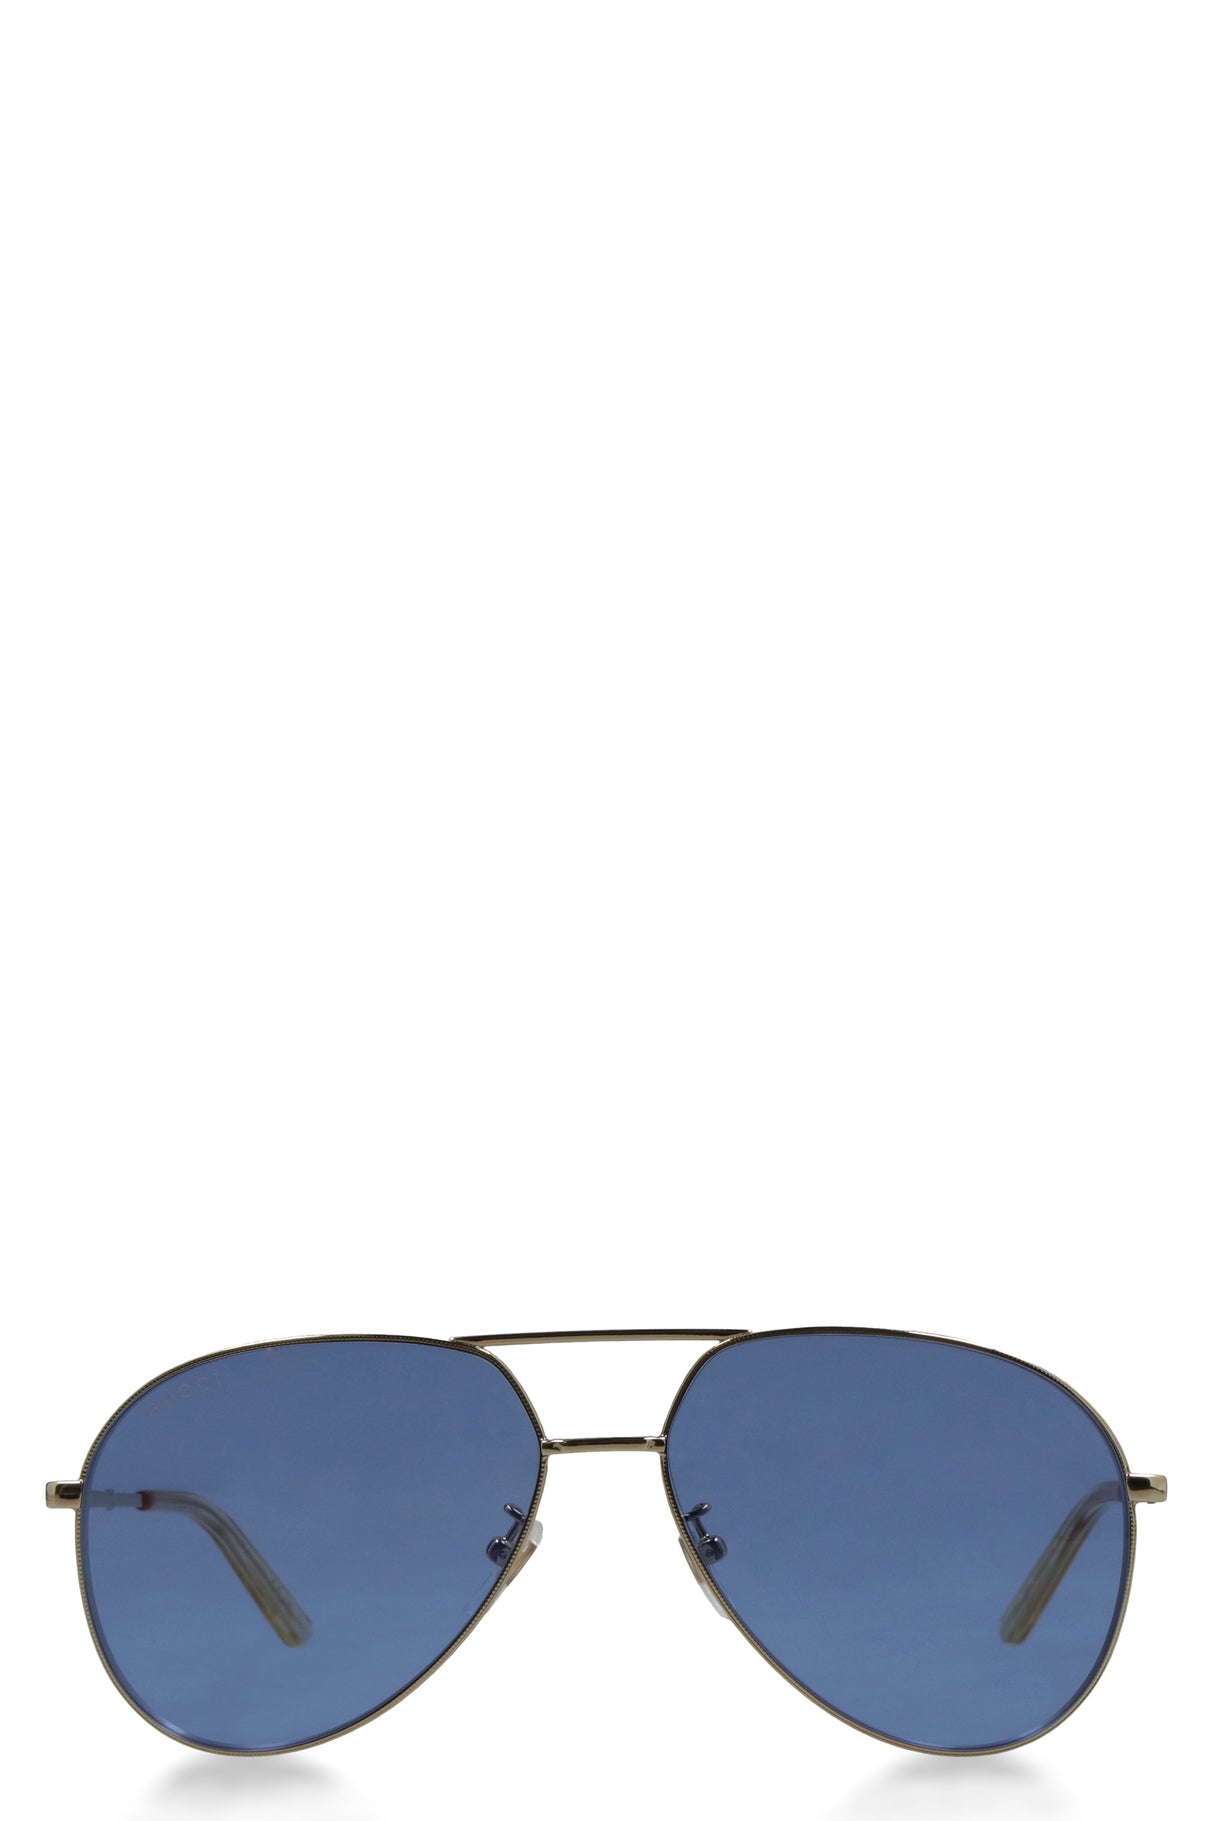 نظارات شمسية بنمط الطيار الأزرق للنساء - عصرية ومتعددة الاستخدامات